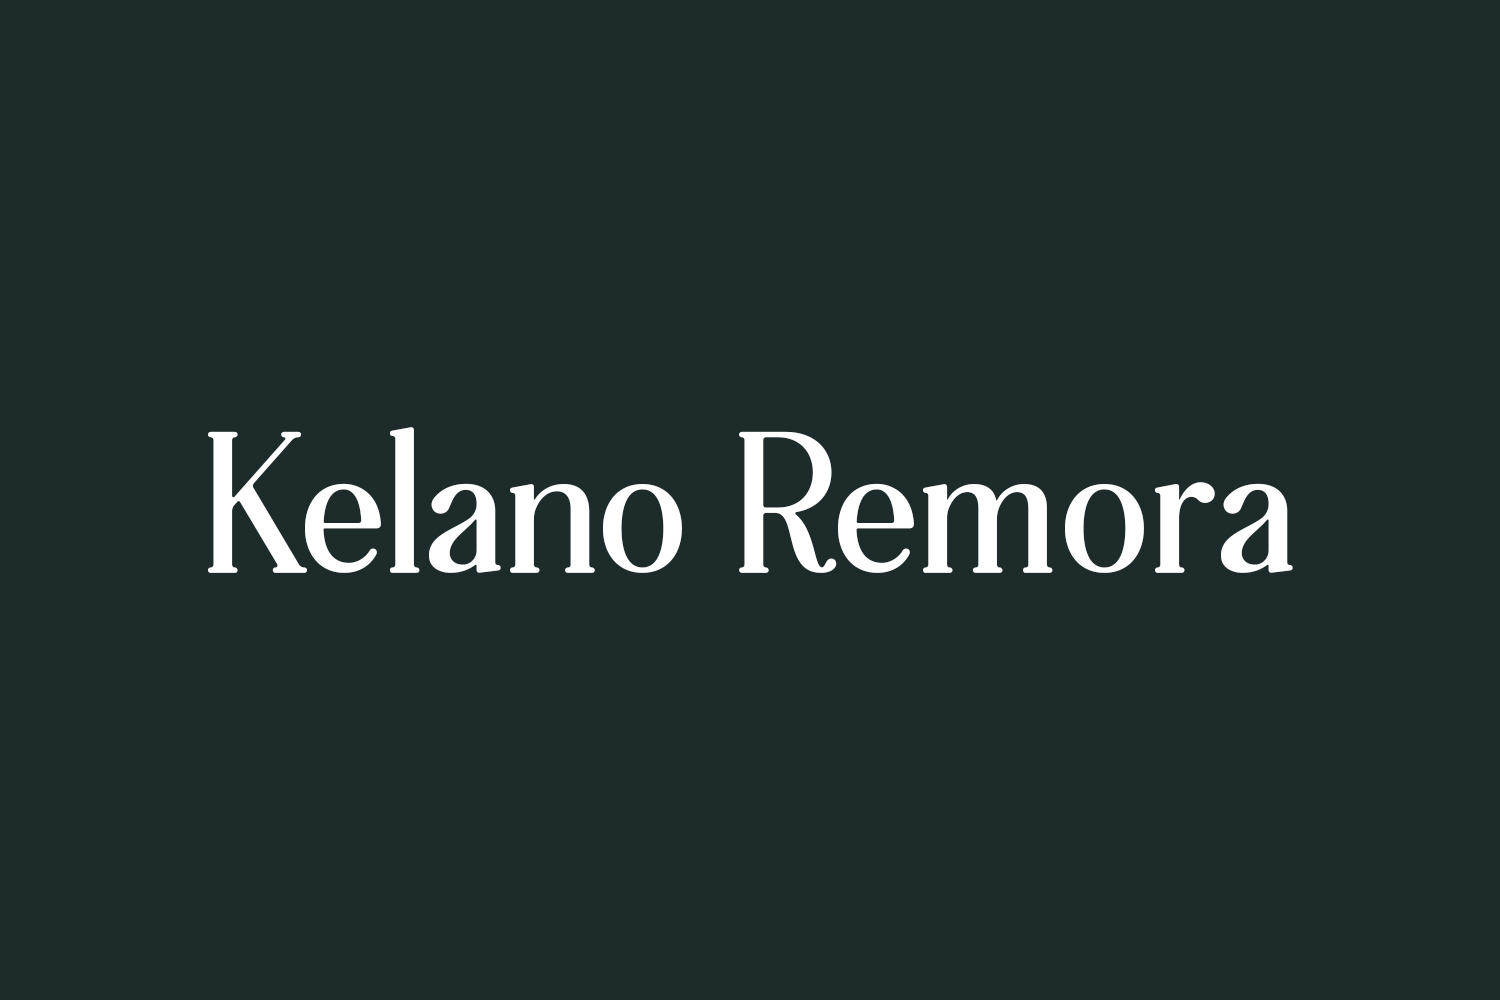 Kelano Remora Free Font